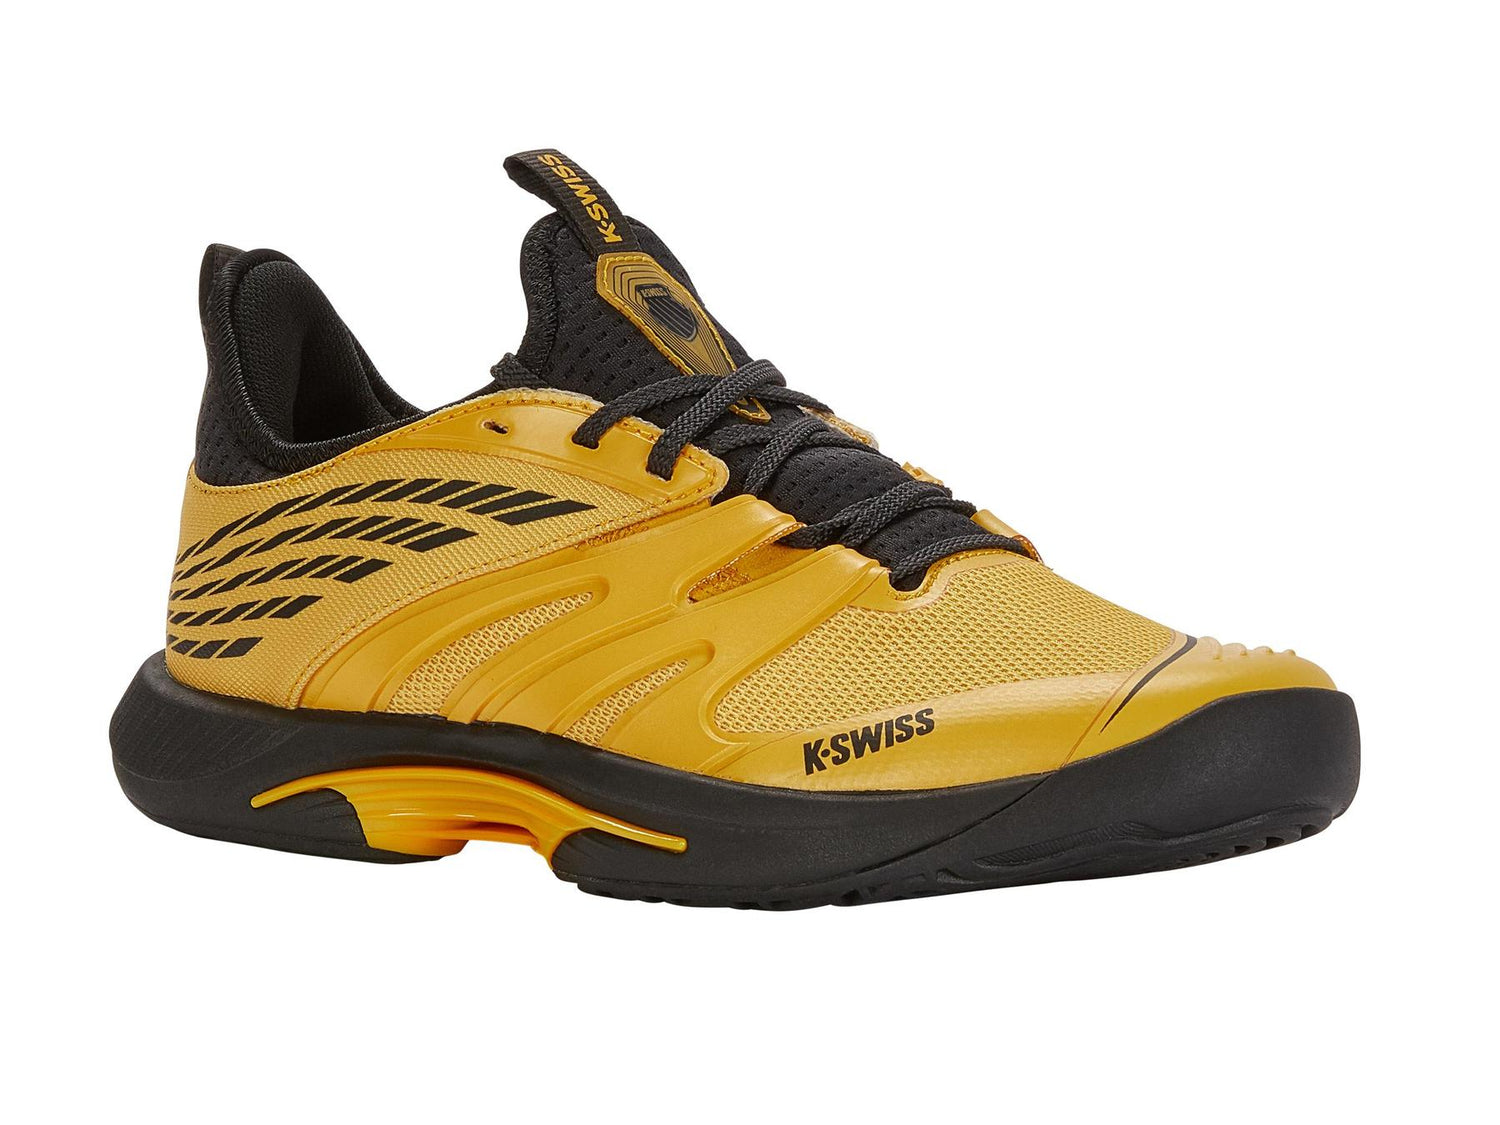 K-Swiss Men's SpeedTrac Tennis Shoes in Amber Yellow/Moonless Night